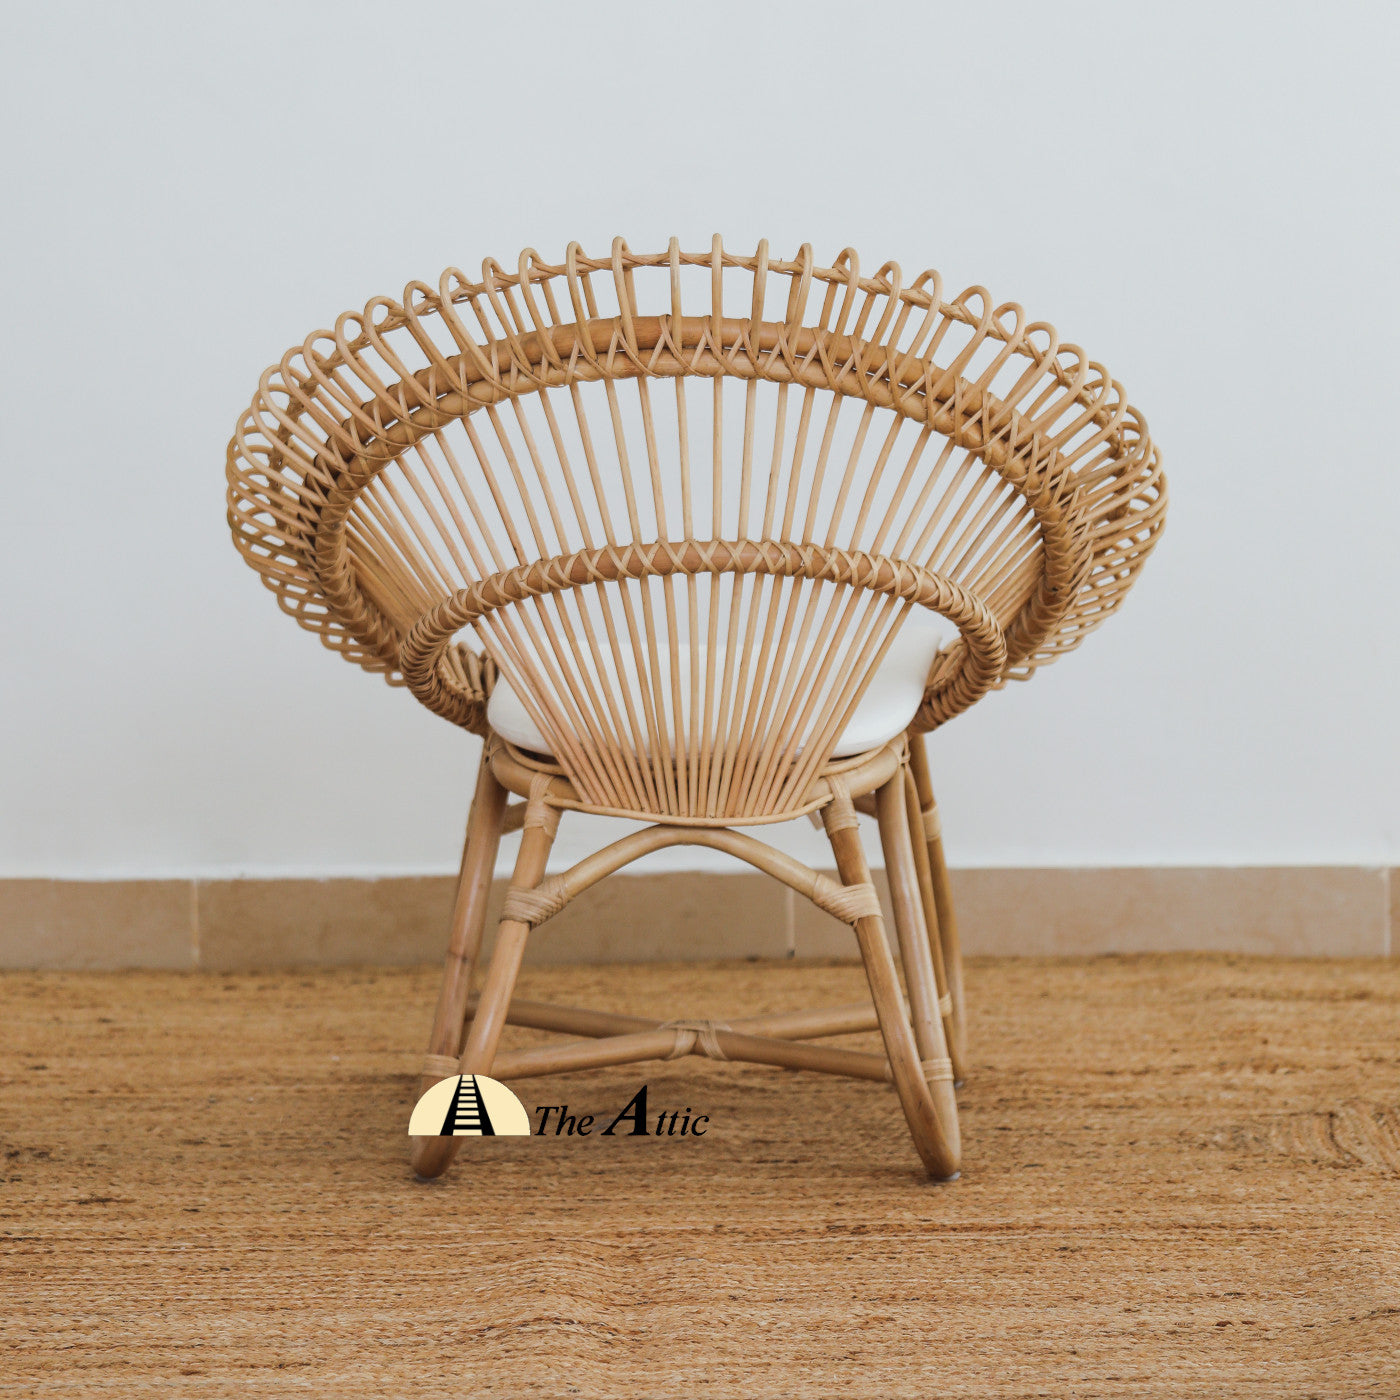 Dahlia Rattan Lounge Chair, Arm Chair, Tub Chair, Rattan Wicker Furniture - The Attic Dubai